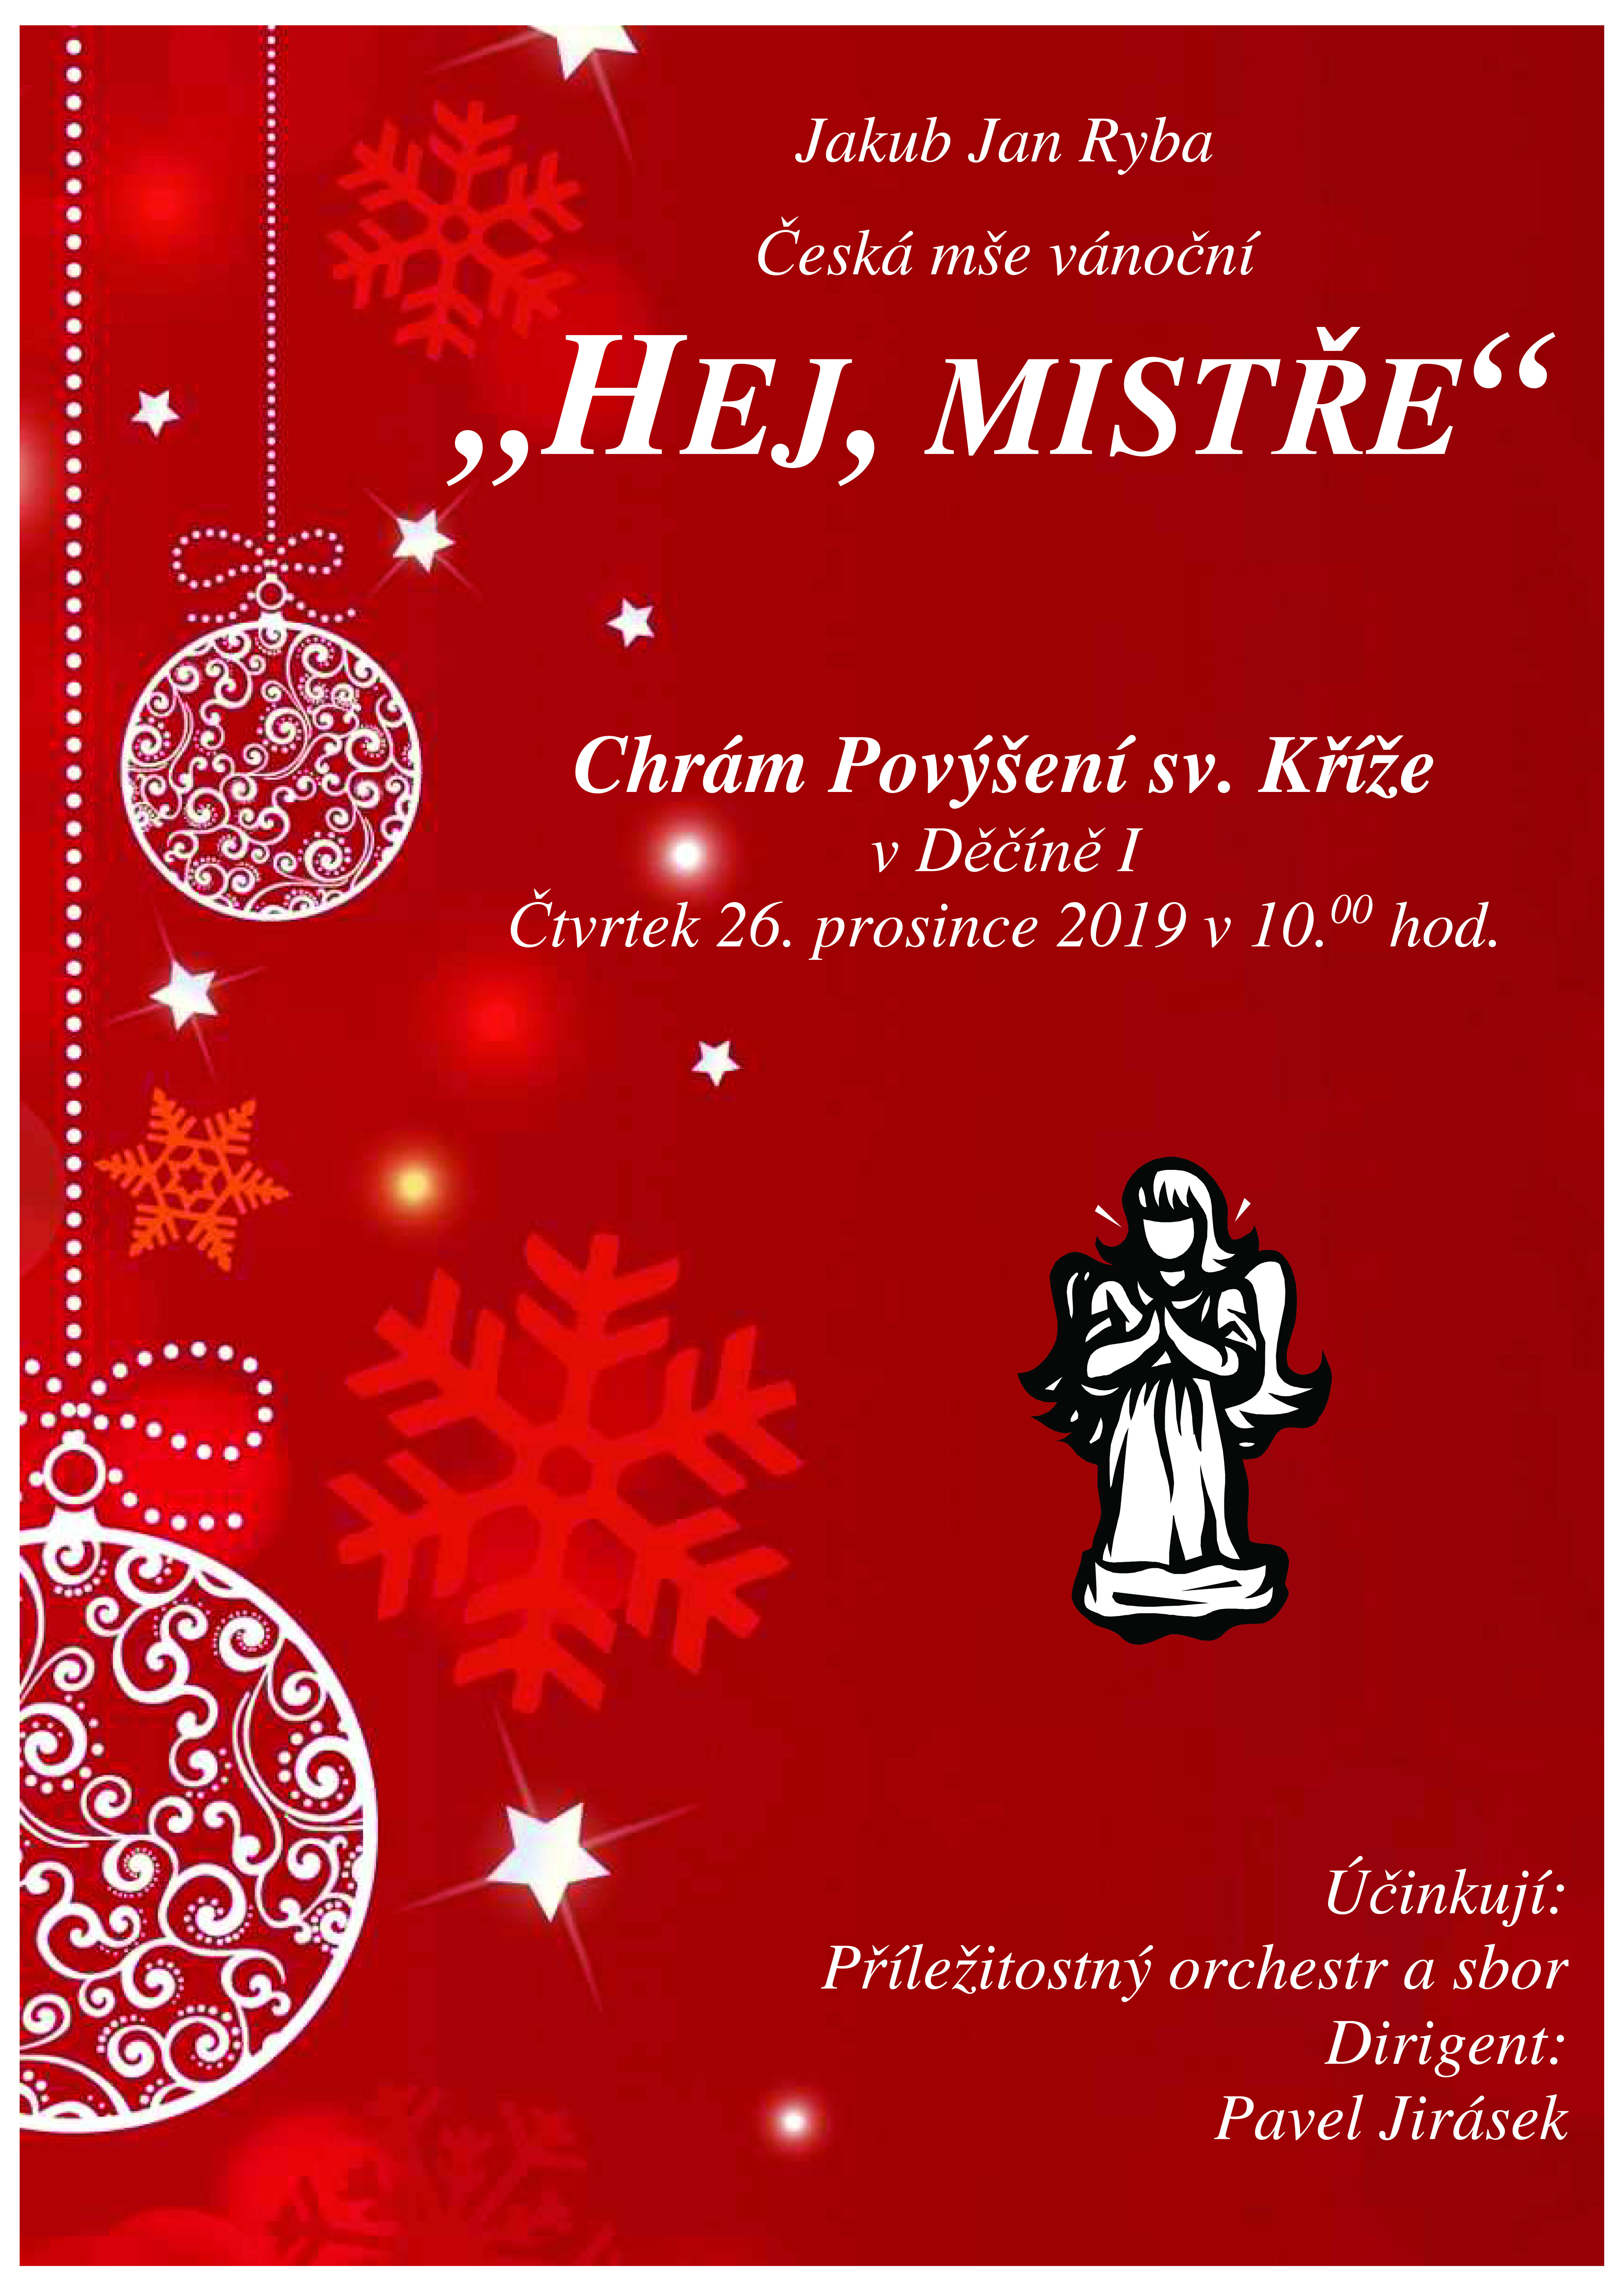 Plakát akce J. J. Ryba - Česká mše vánoční